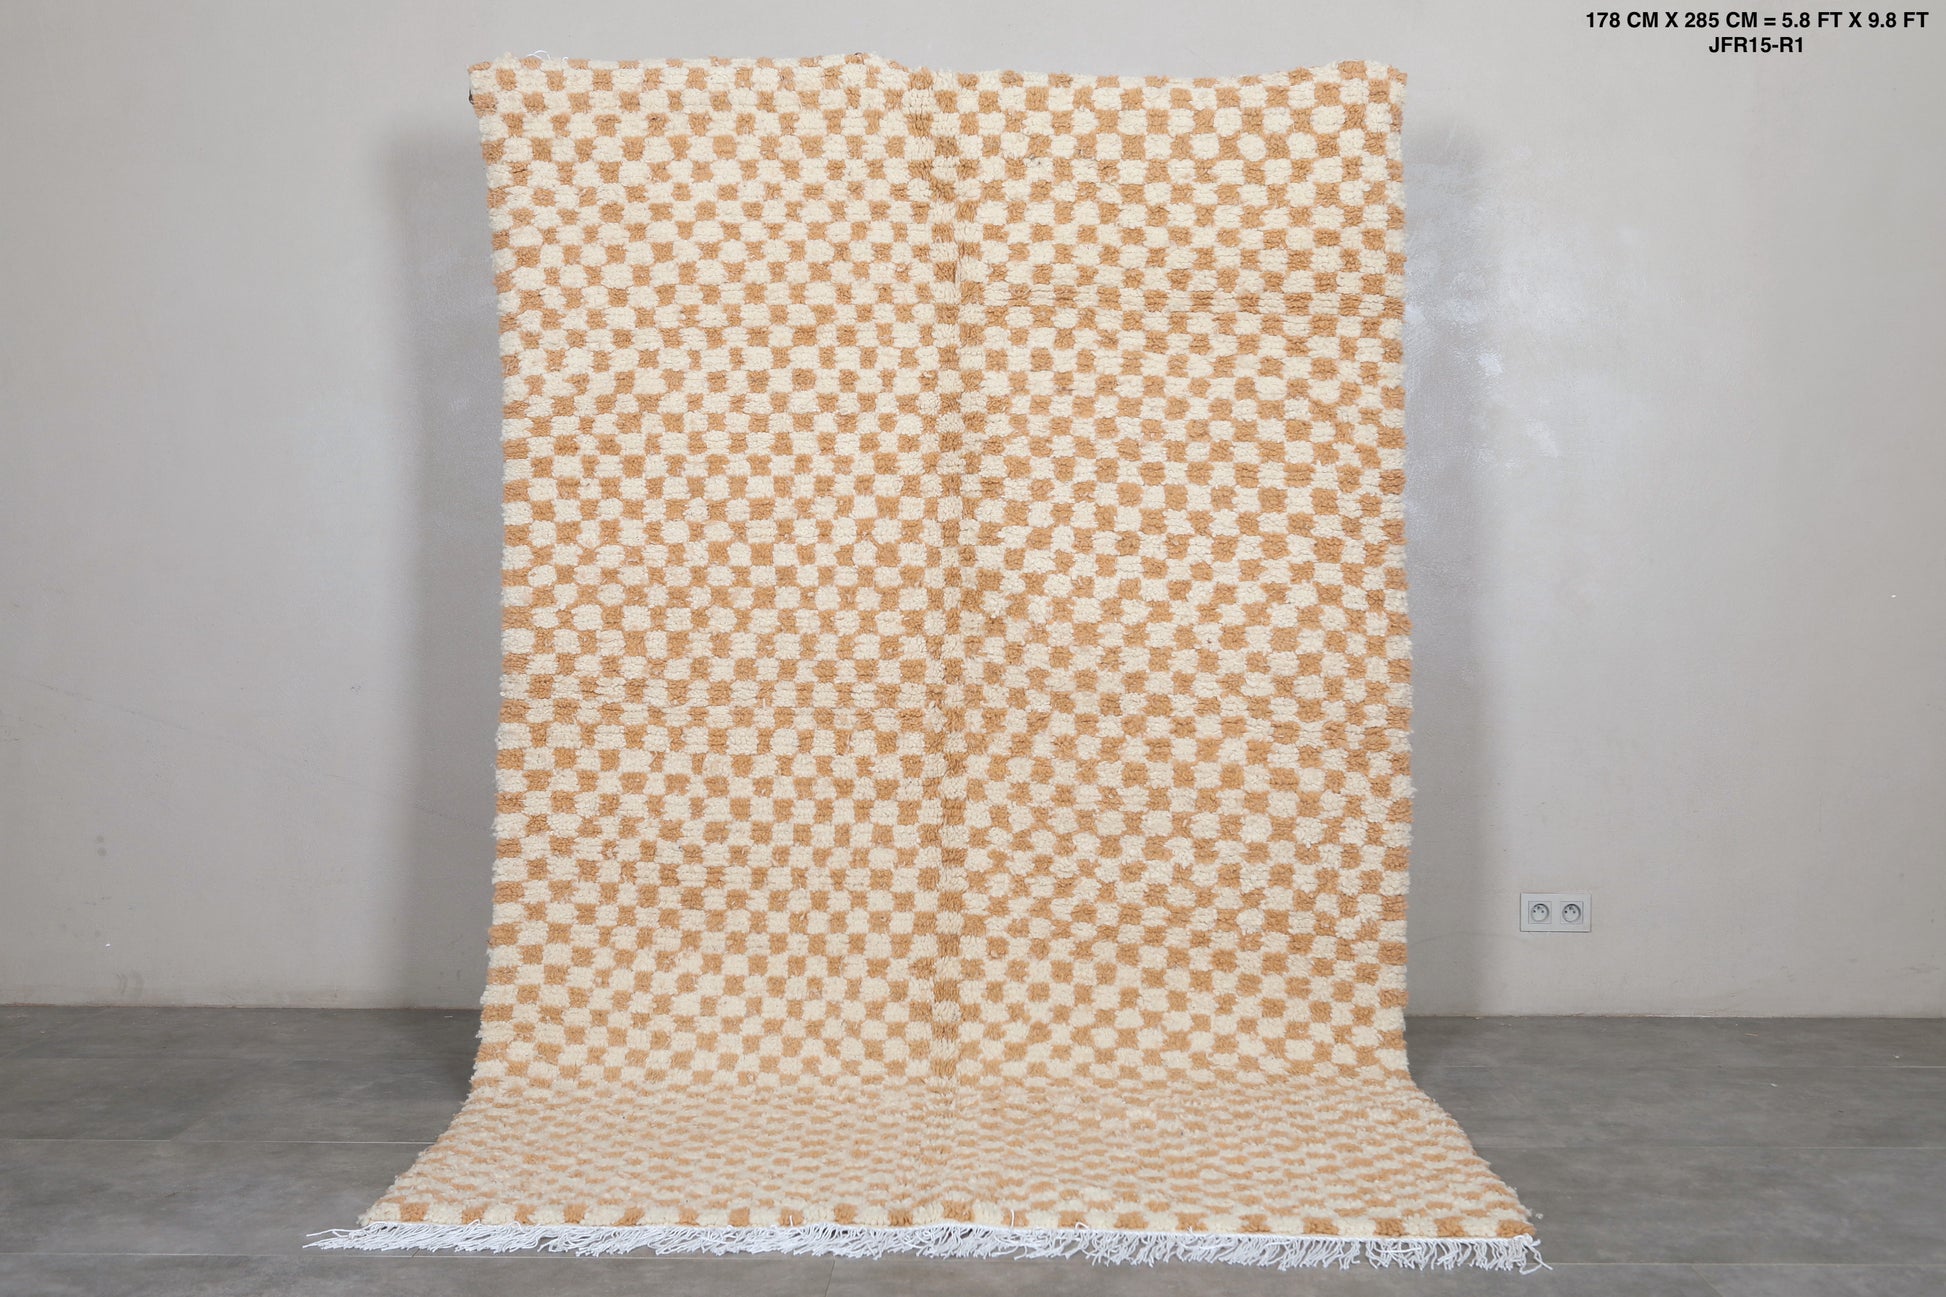 Moroccan rug 5.8 X 9.3 Feet - Beni ourain rugs